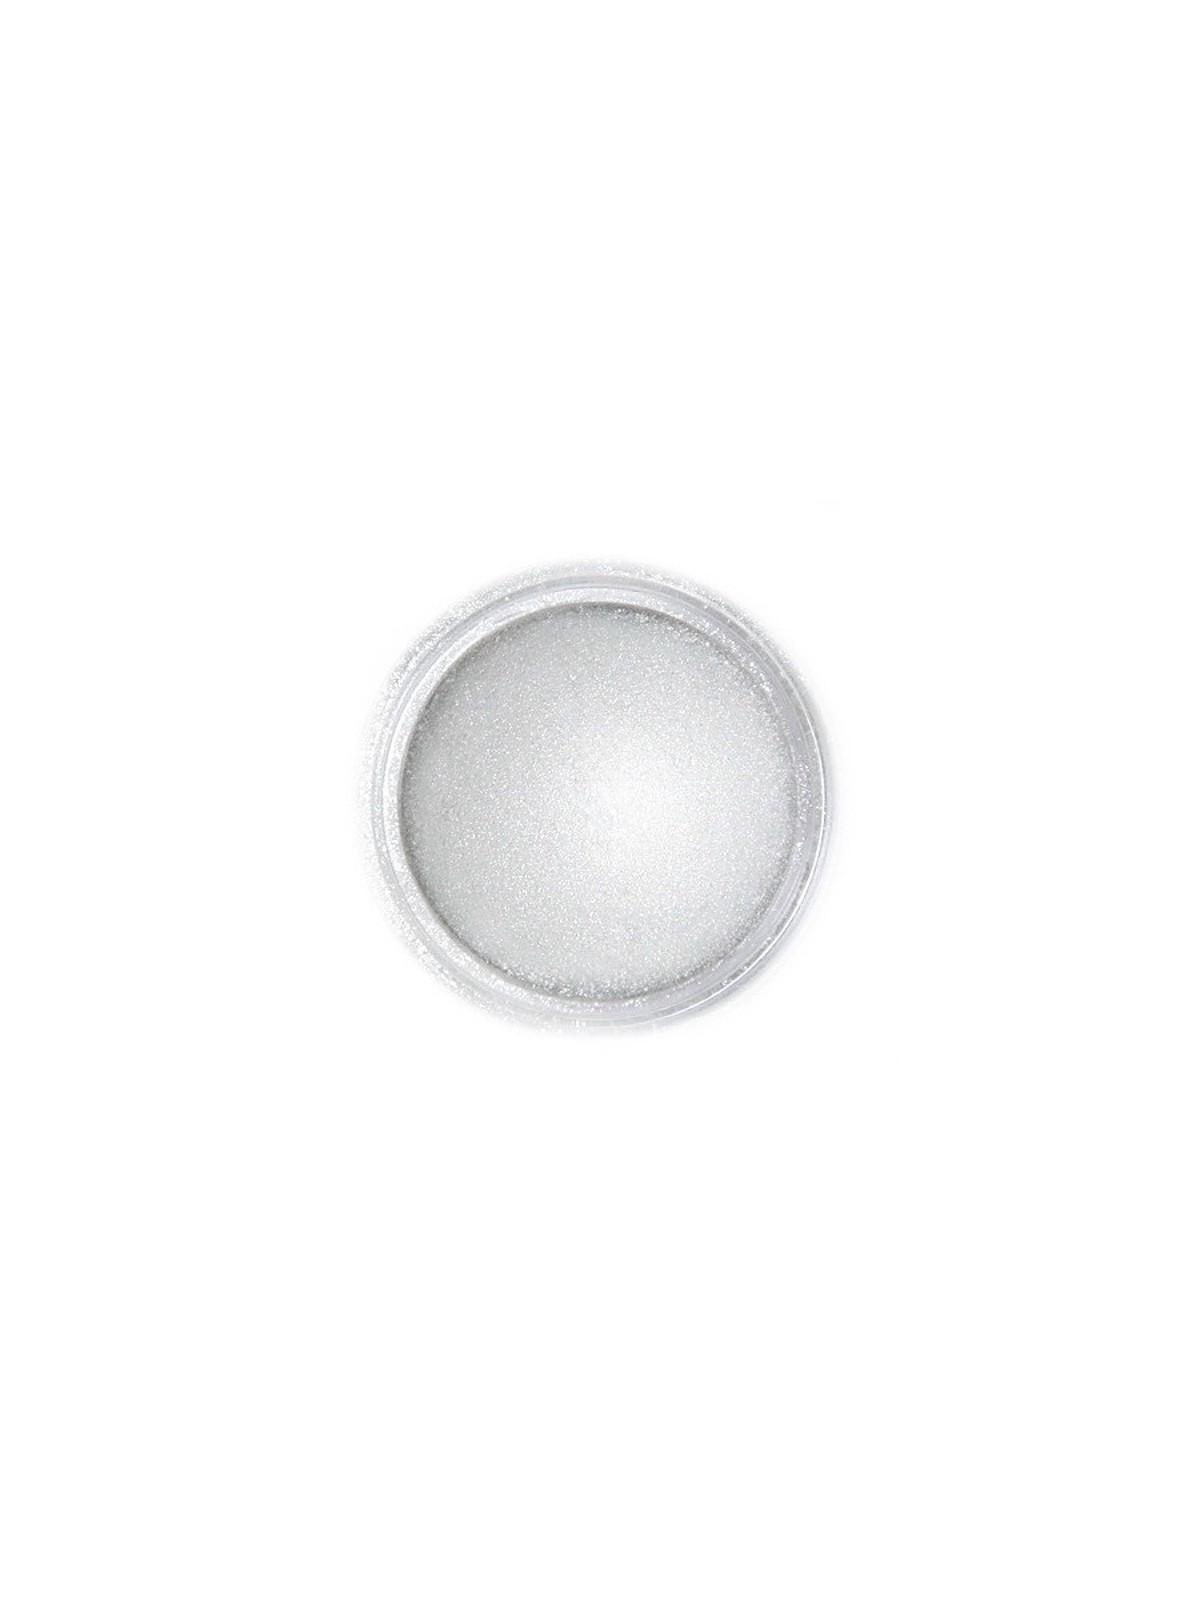 Jadalna pudrowa farba perłowa Fractal - Light Silver (3 g)